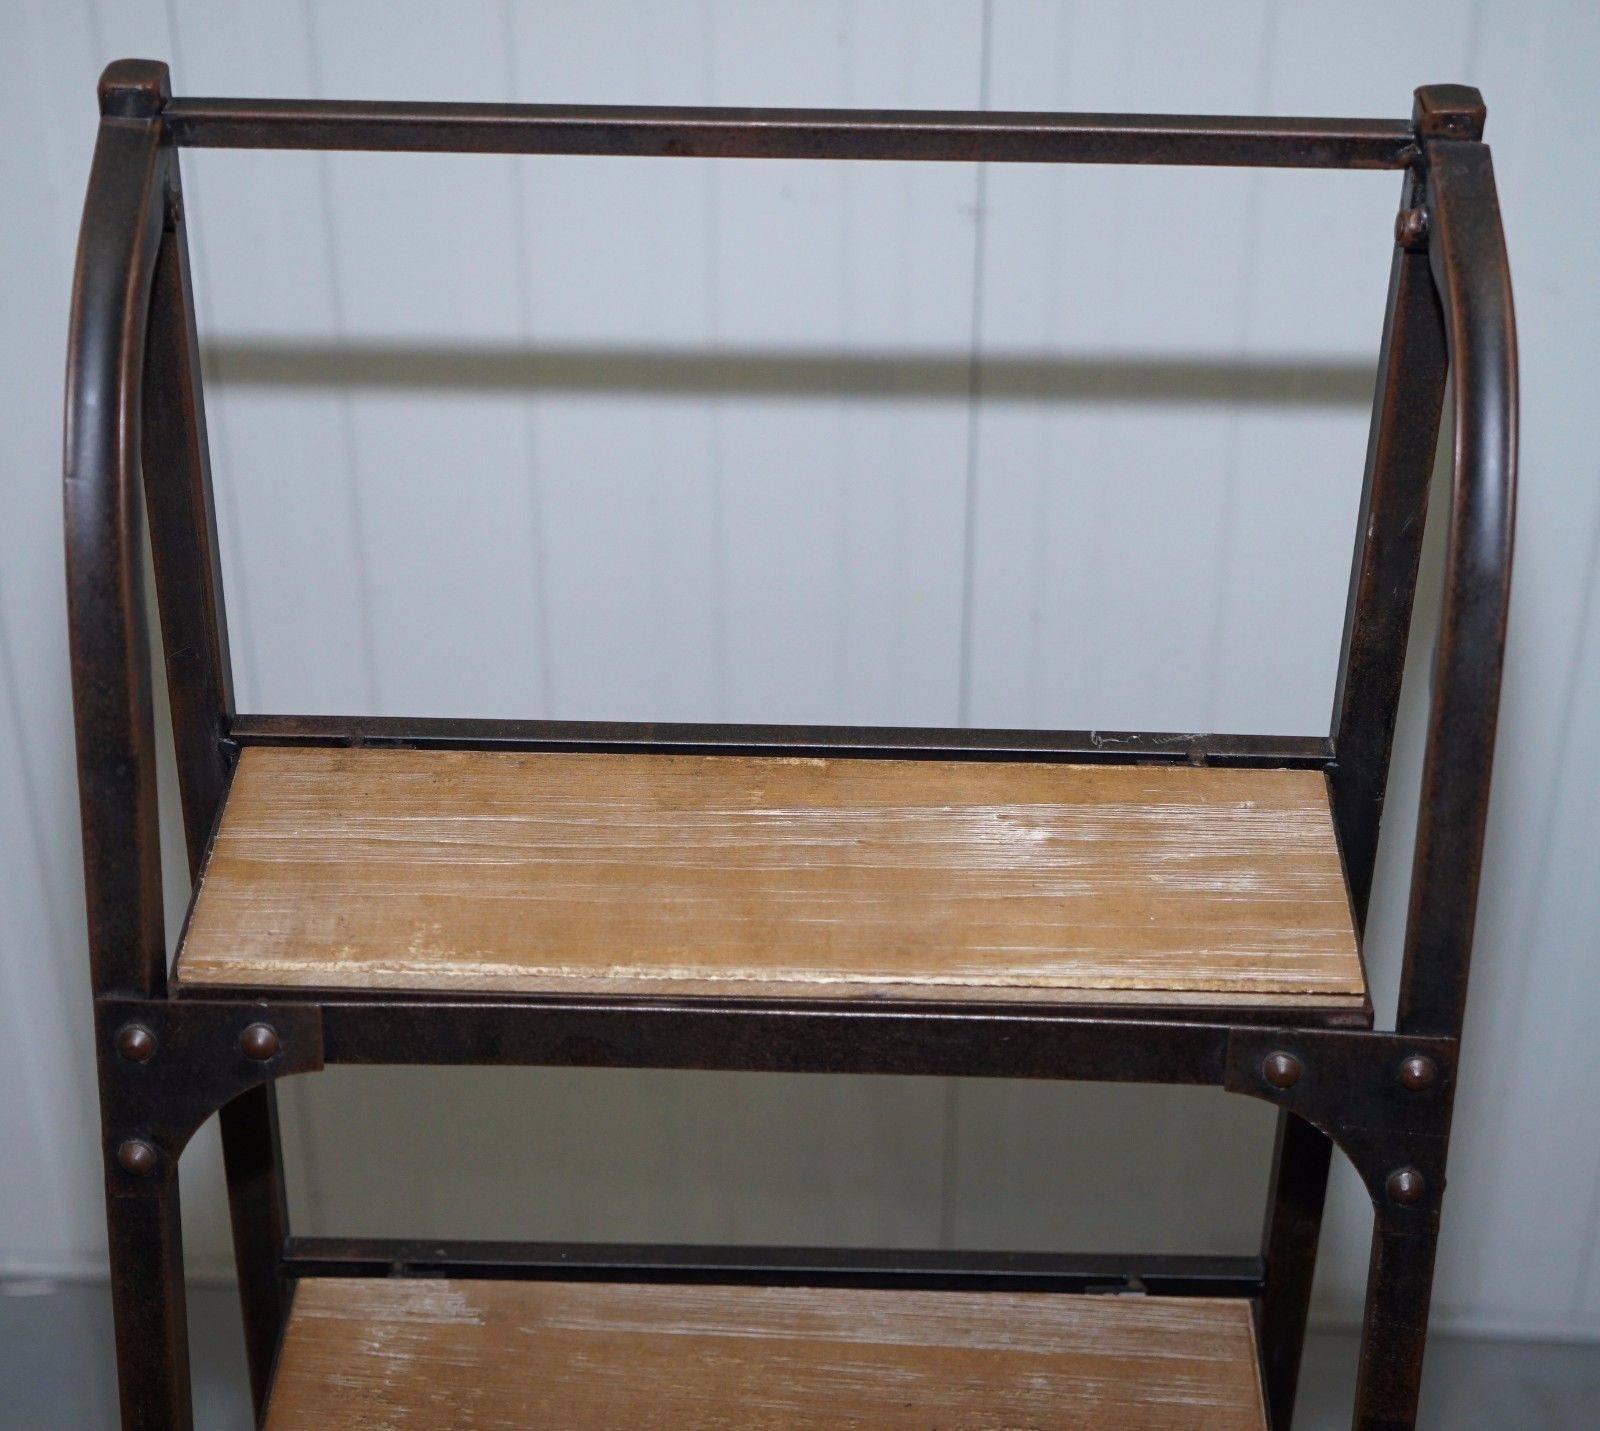 Modern Restored Vintage Industrial Bakers Shelves Ladder Bookcase Solid Steel